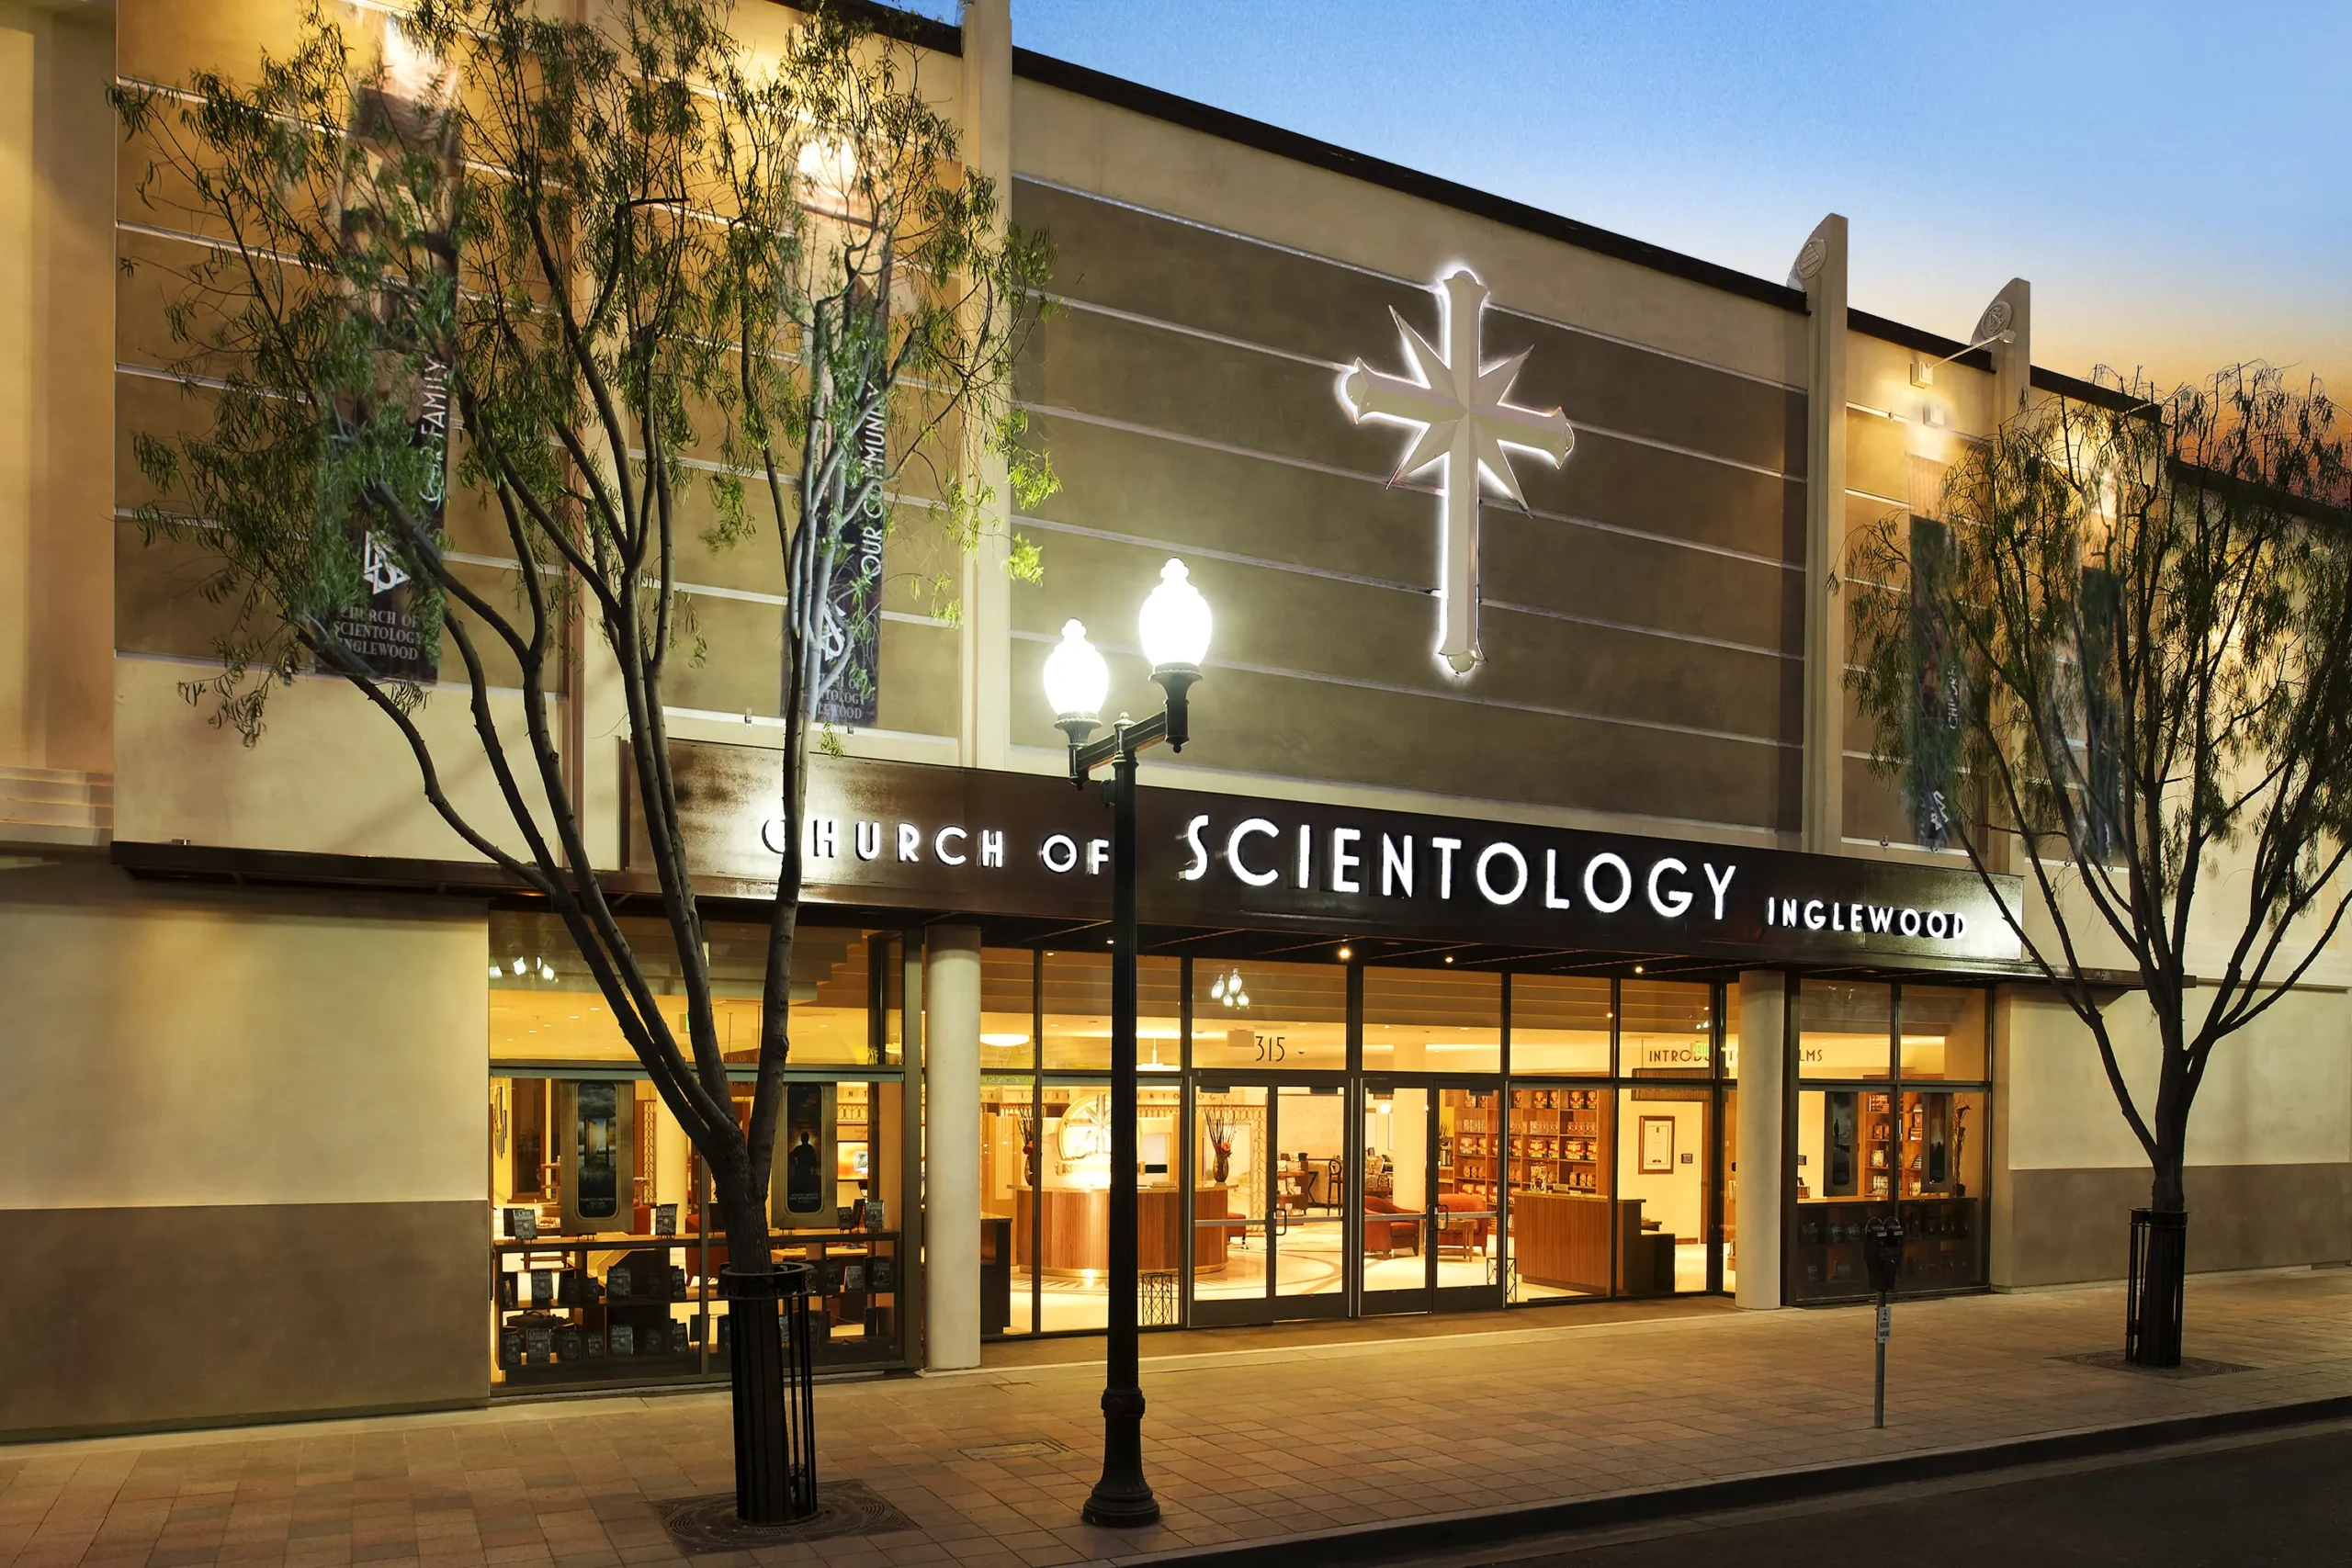 Descubra a Cientologia Igreja, Crenças e Polêmicas